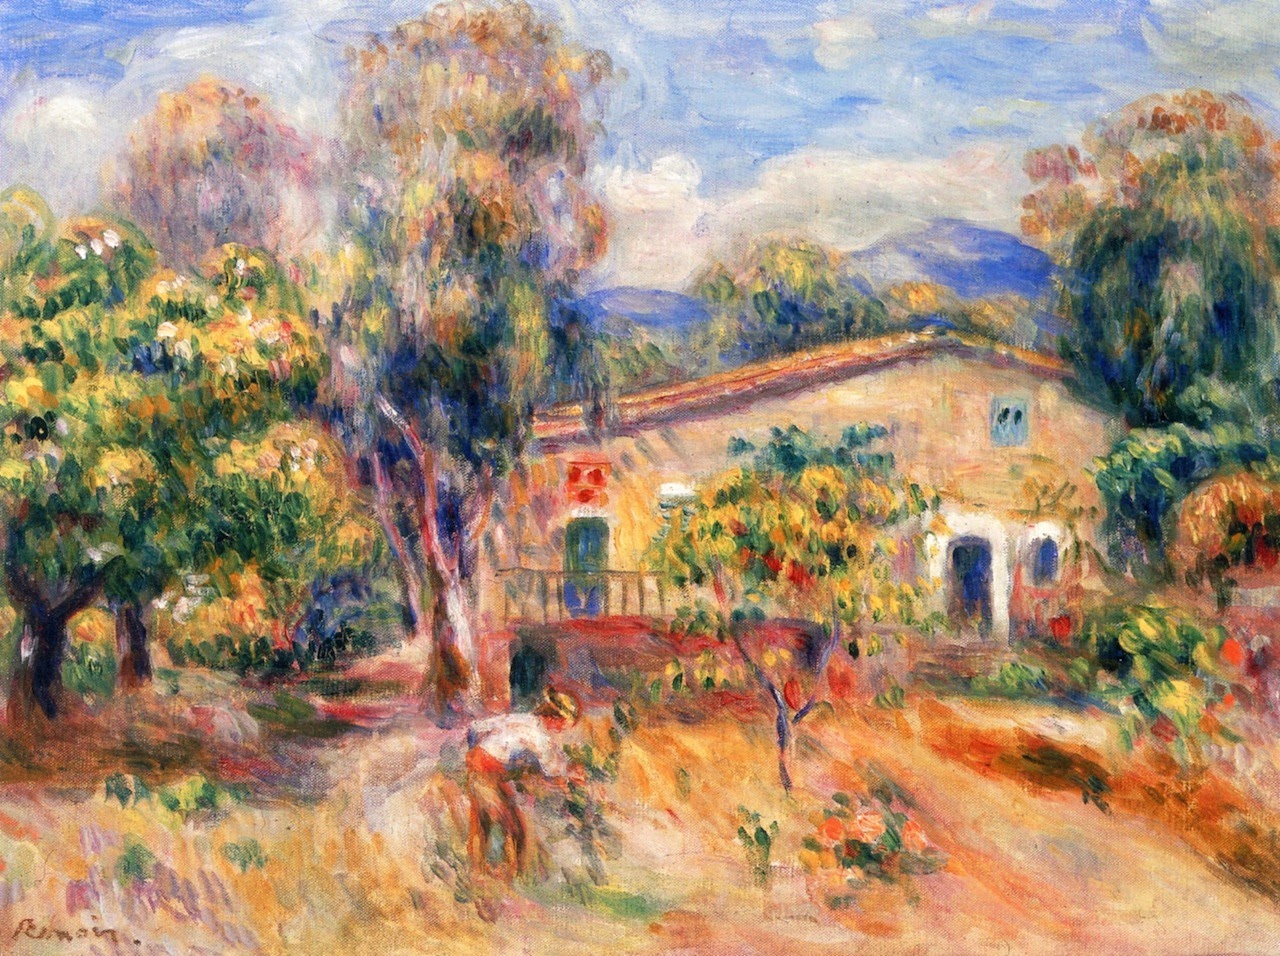 Pierre+Auguste+Renoir-1841-1-19 (217).jpg